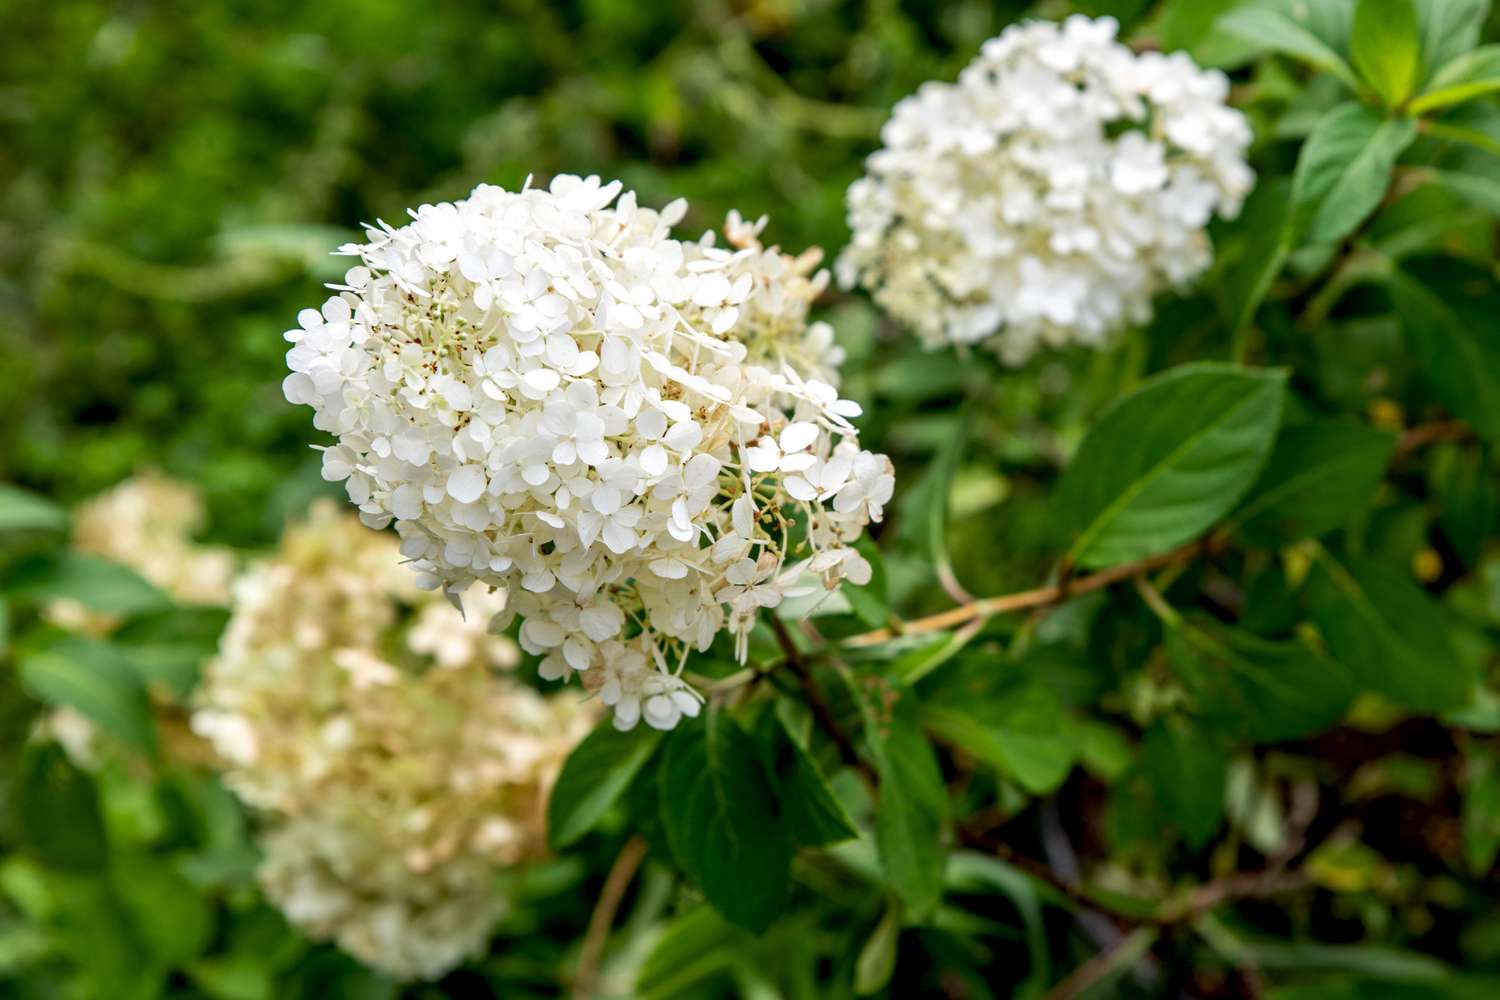 Arbusto de hortênsia Bobo com panículas de flores brancas na extremidade dos galhos com folhas ovais